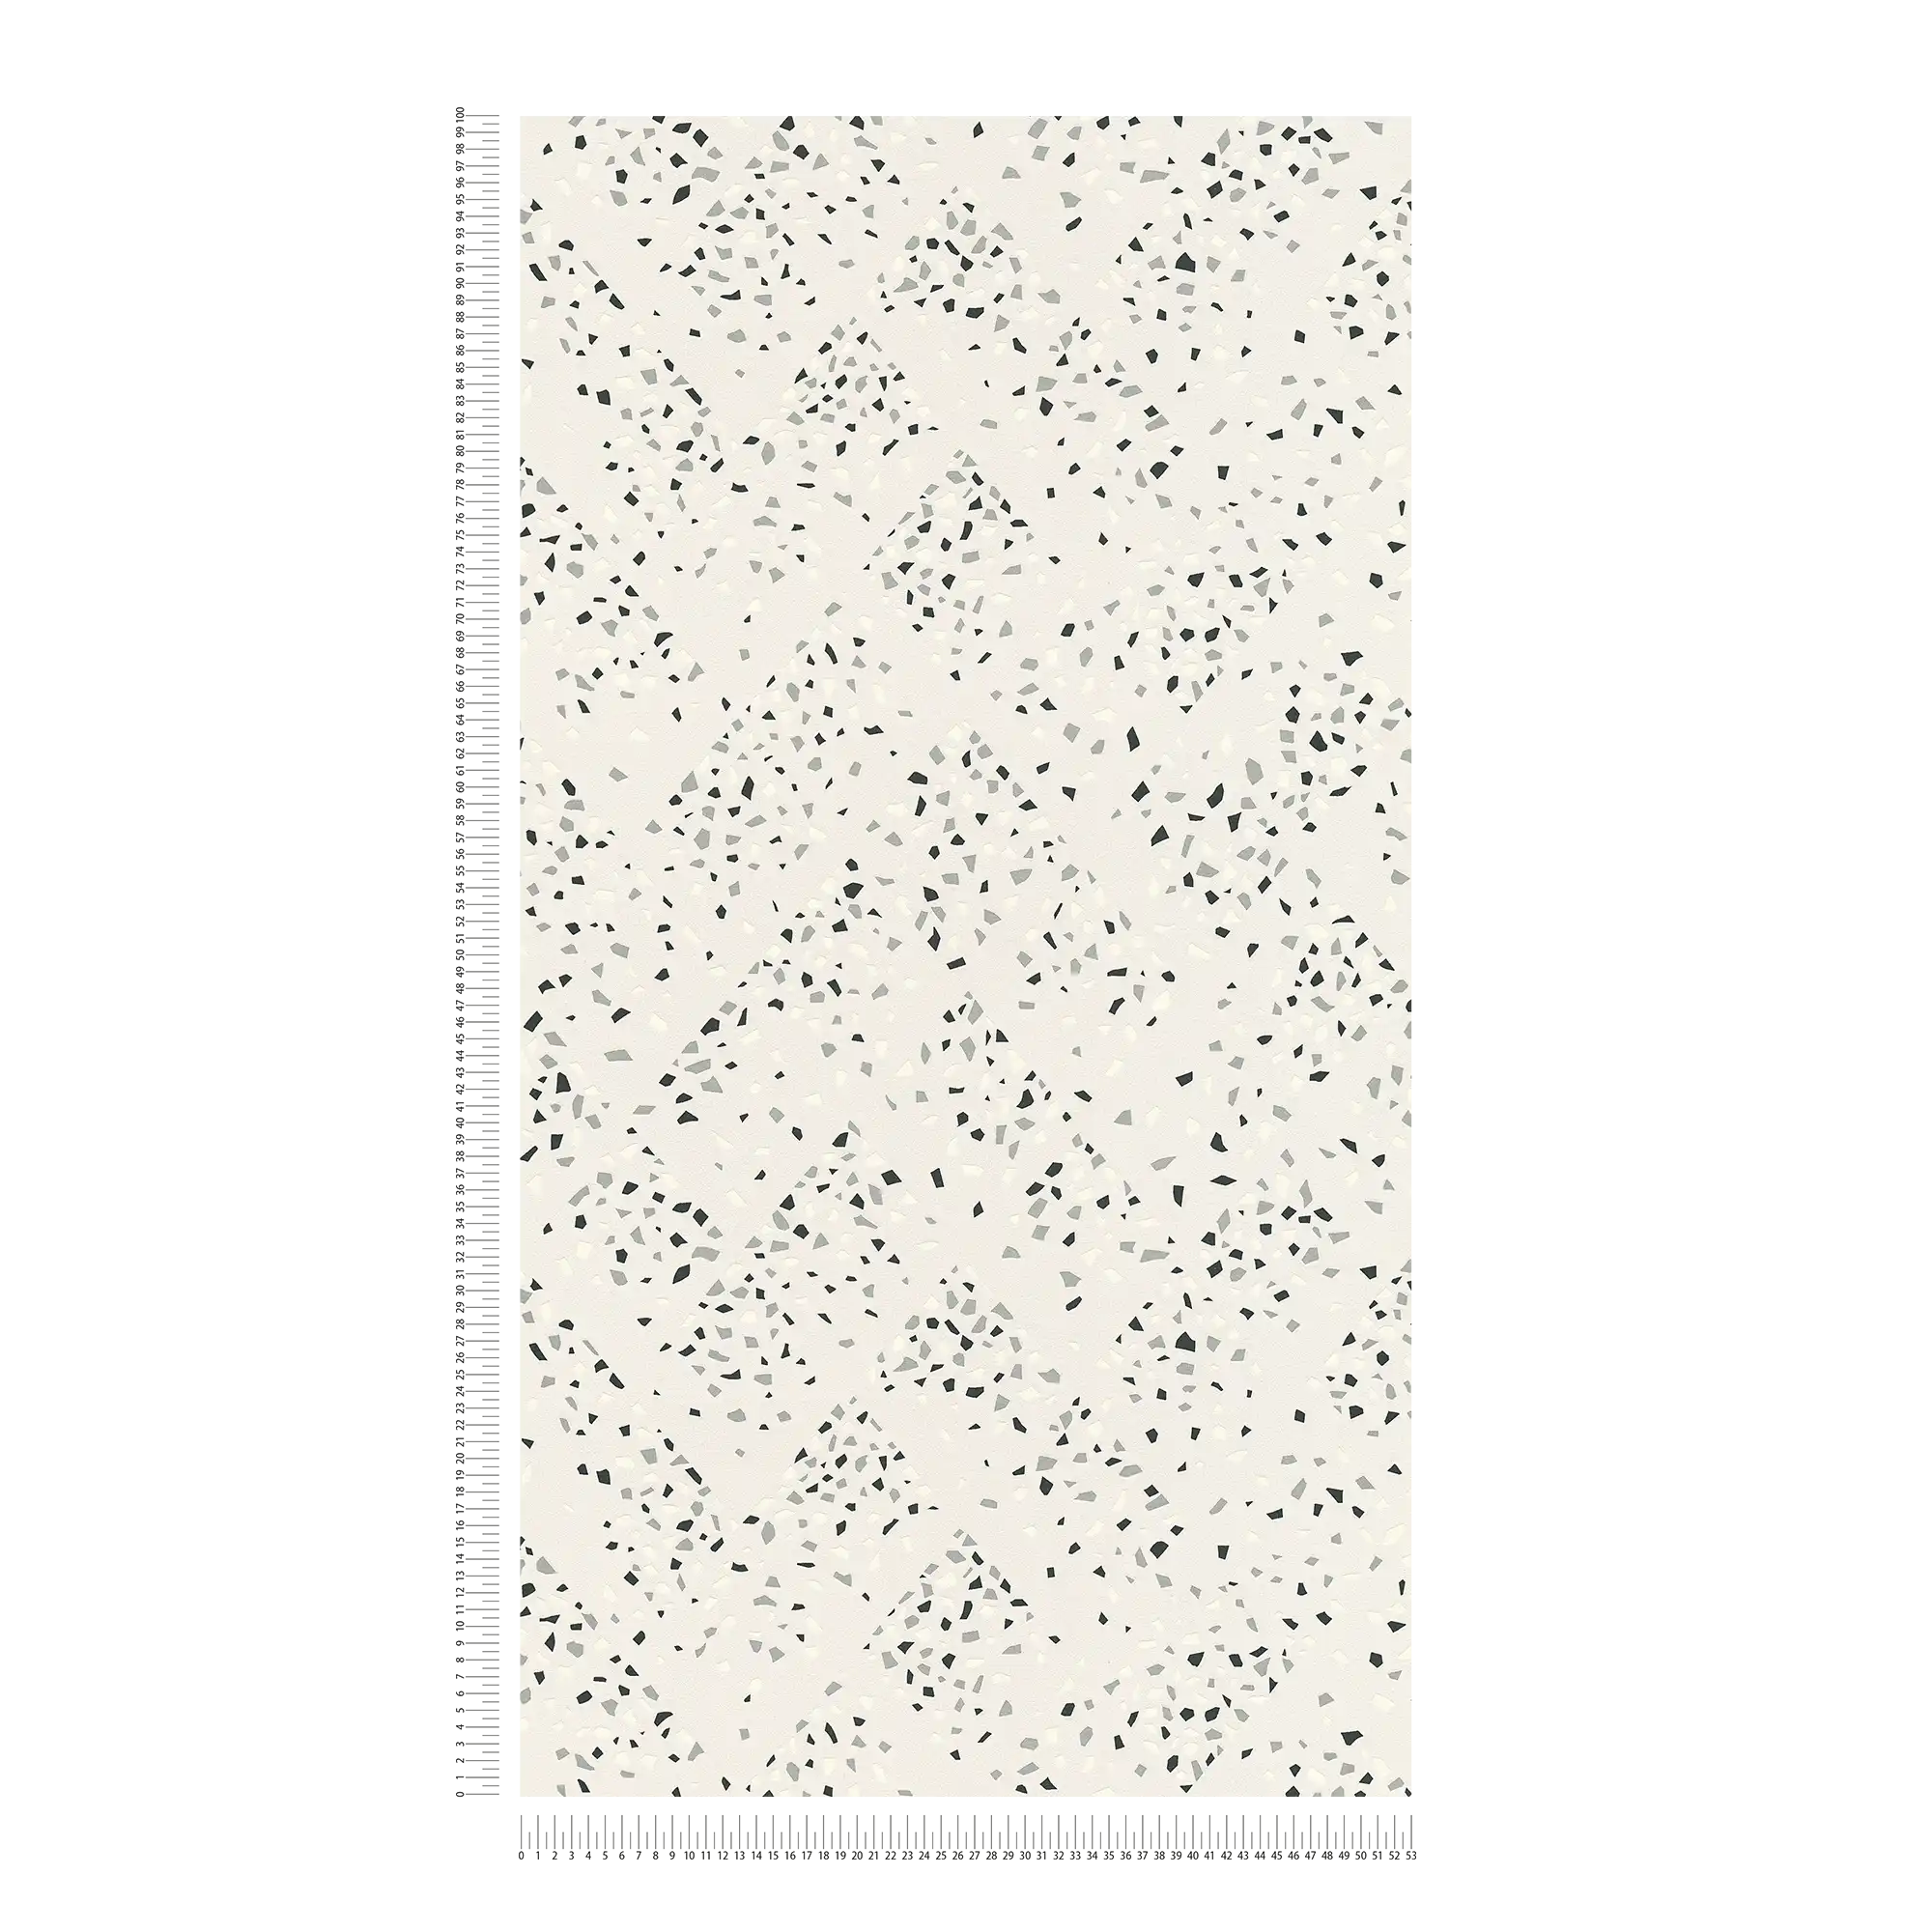             Papier peint motif terrazzo & effet métallique - blanc, noir, argenté
        